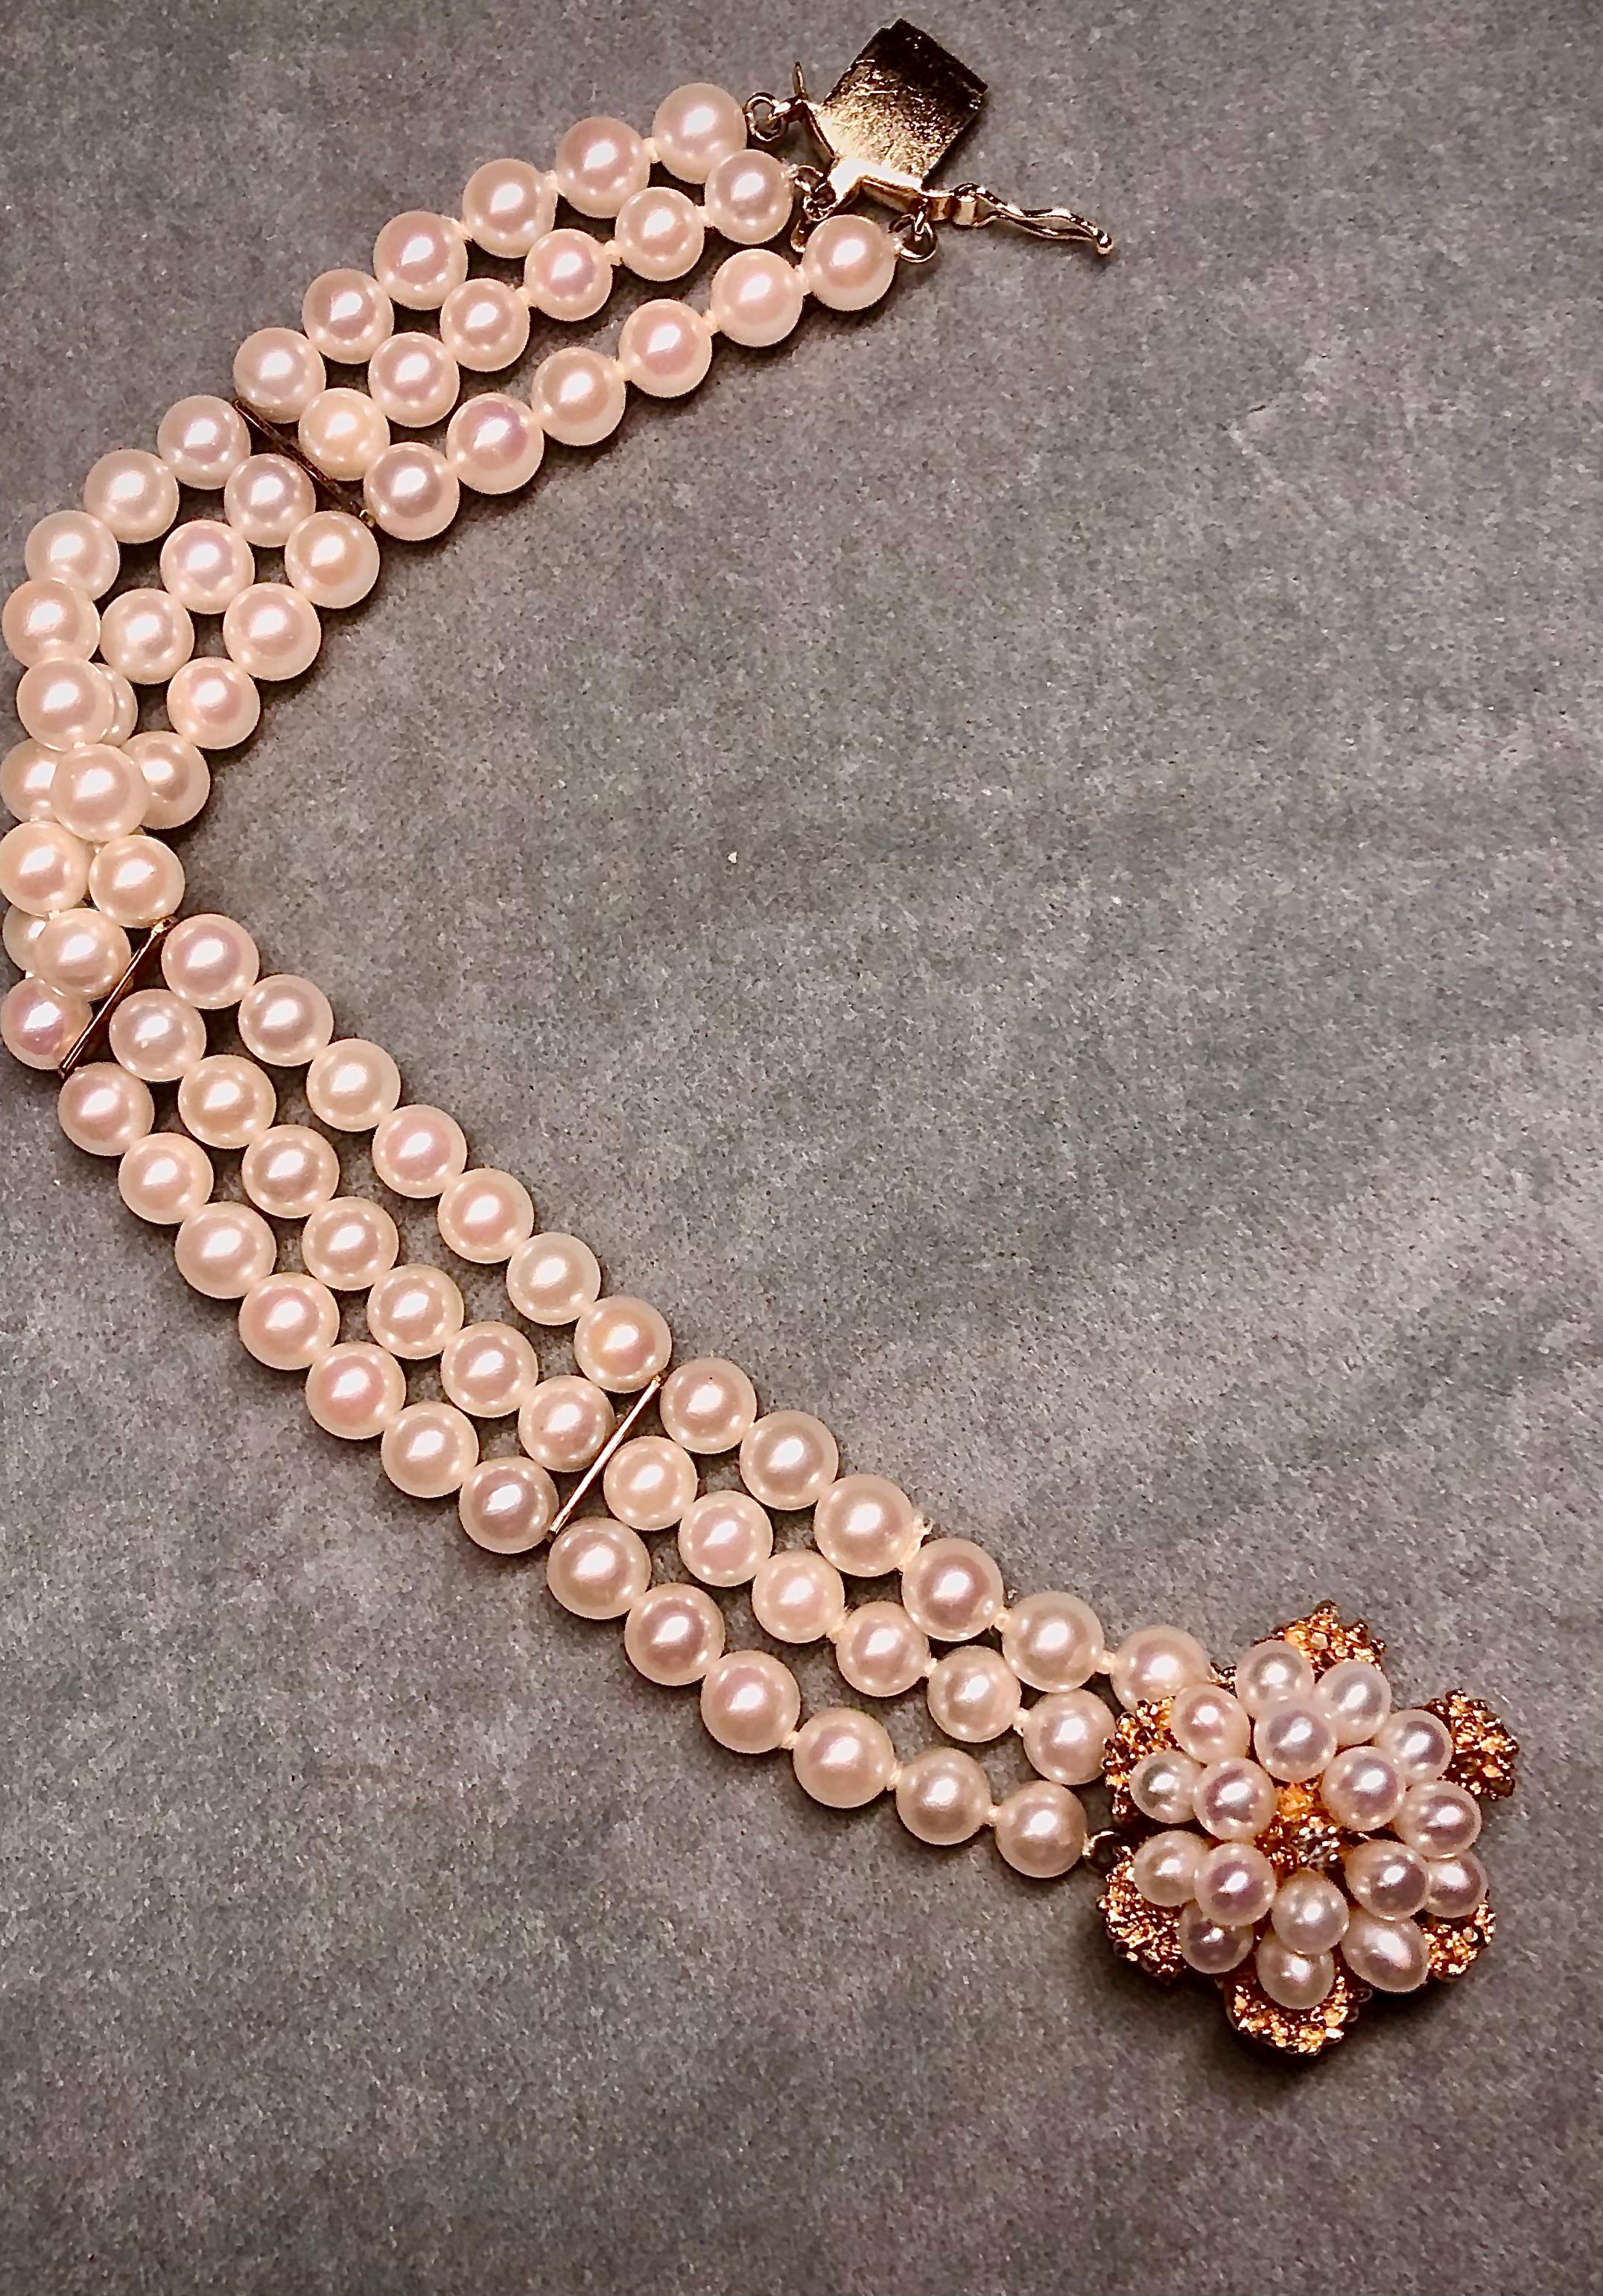 Ein sehr attraktives dreisträngiges Vintage-Armband mit runden, hochglänzenden, cremeweißen Perlen. Das Armband ist auf einem komplizierten 14kt Gold floralem Motiv Verschluss zentriert. Die Schließe ist mit mehreren Perlen verziert, die farblich zu